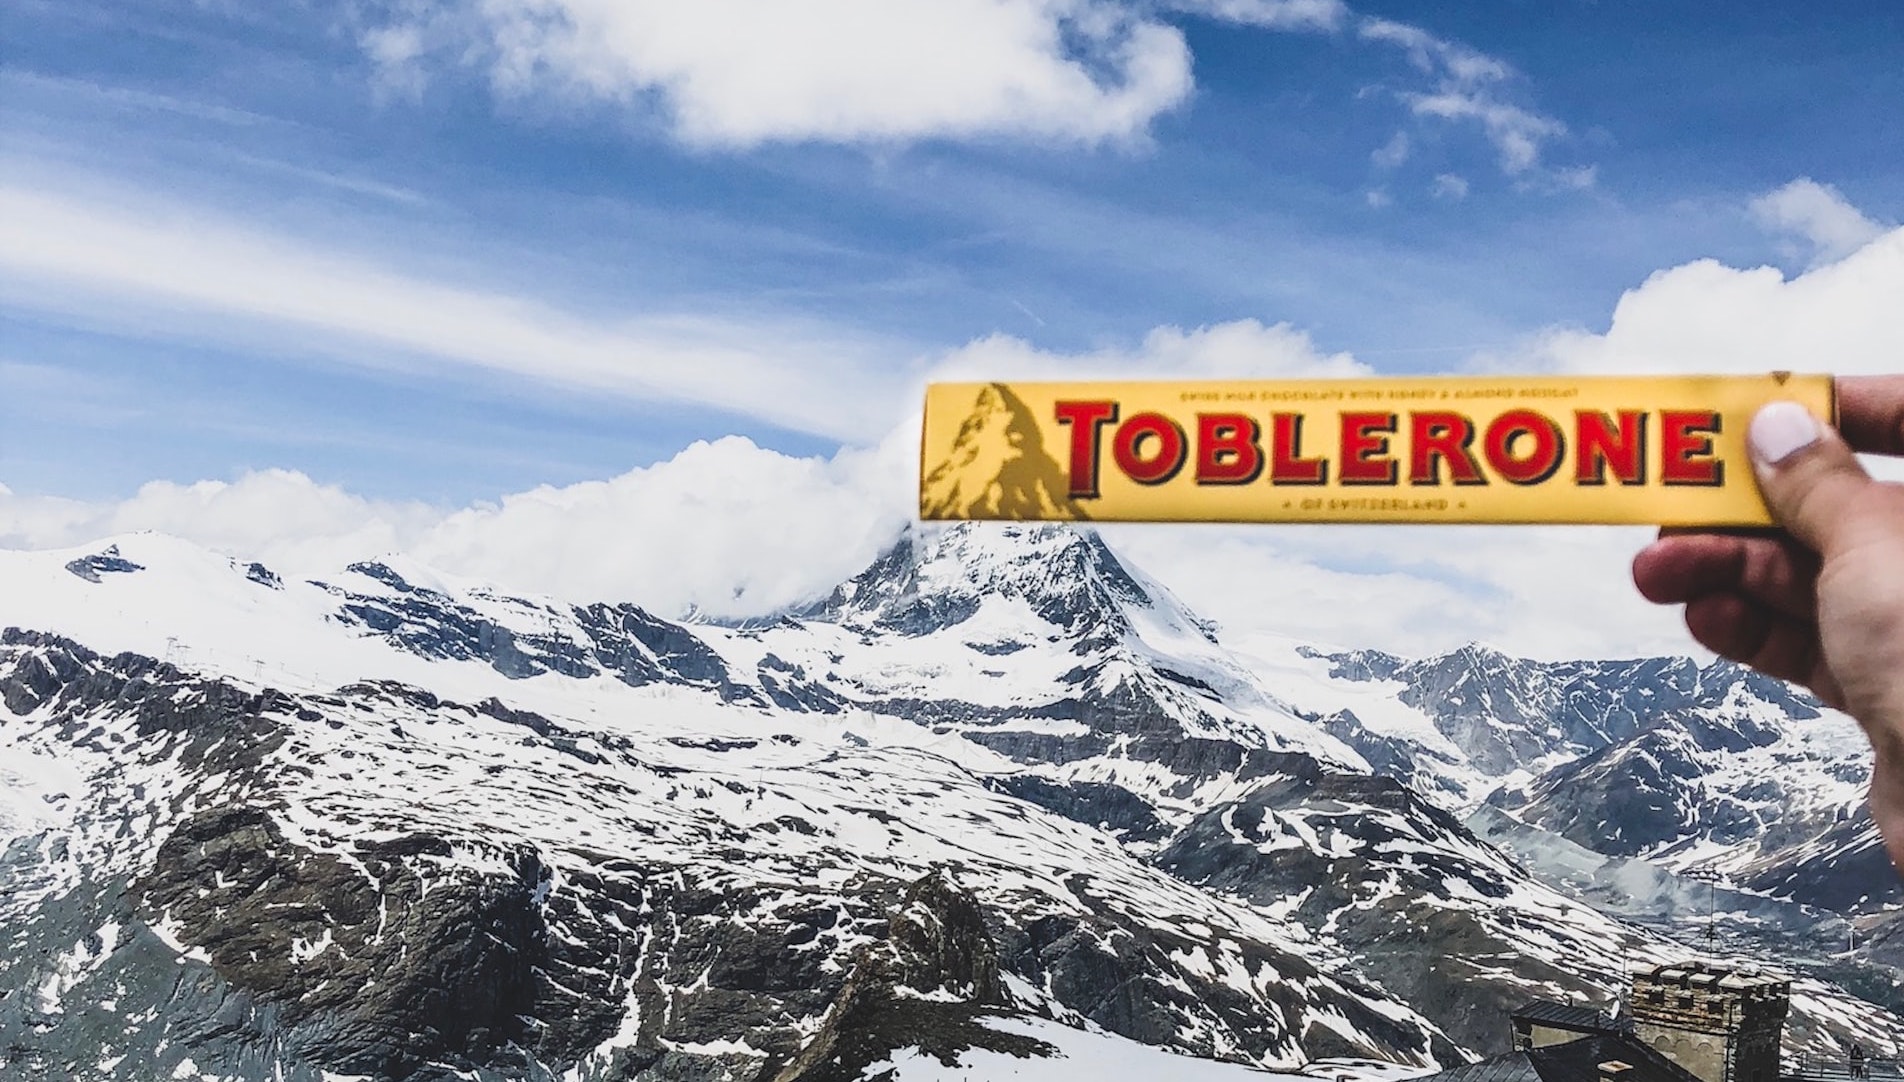 🏔️ Na obgortci šokoladky Toblerone biľše ne bude gory čerez zakony Švejcariї